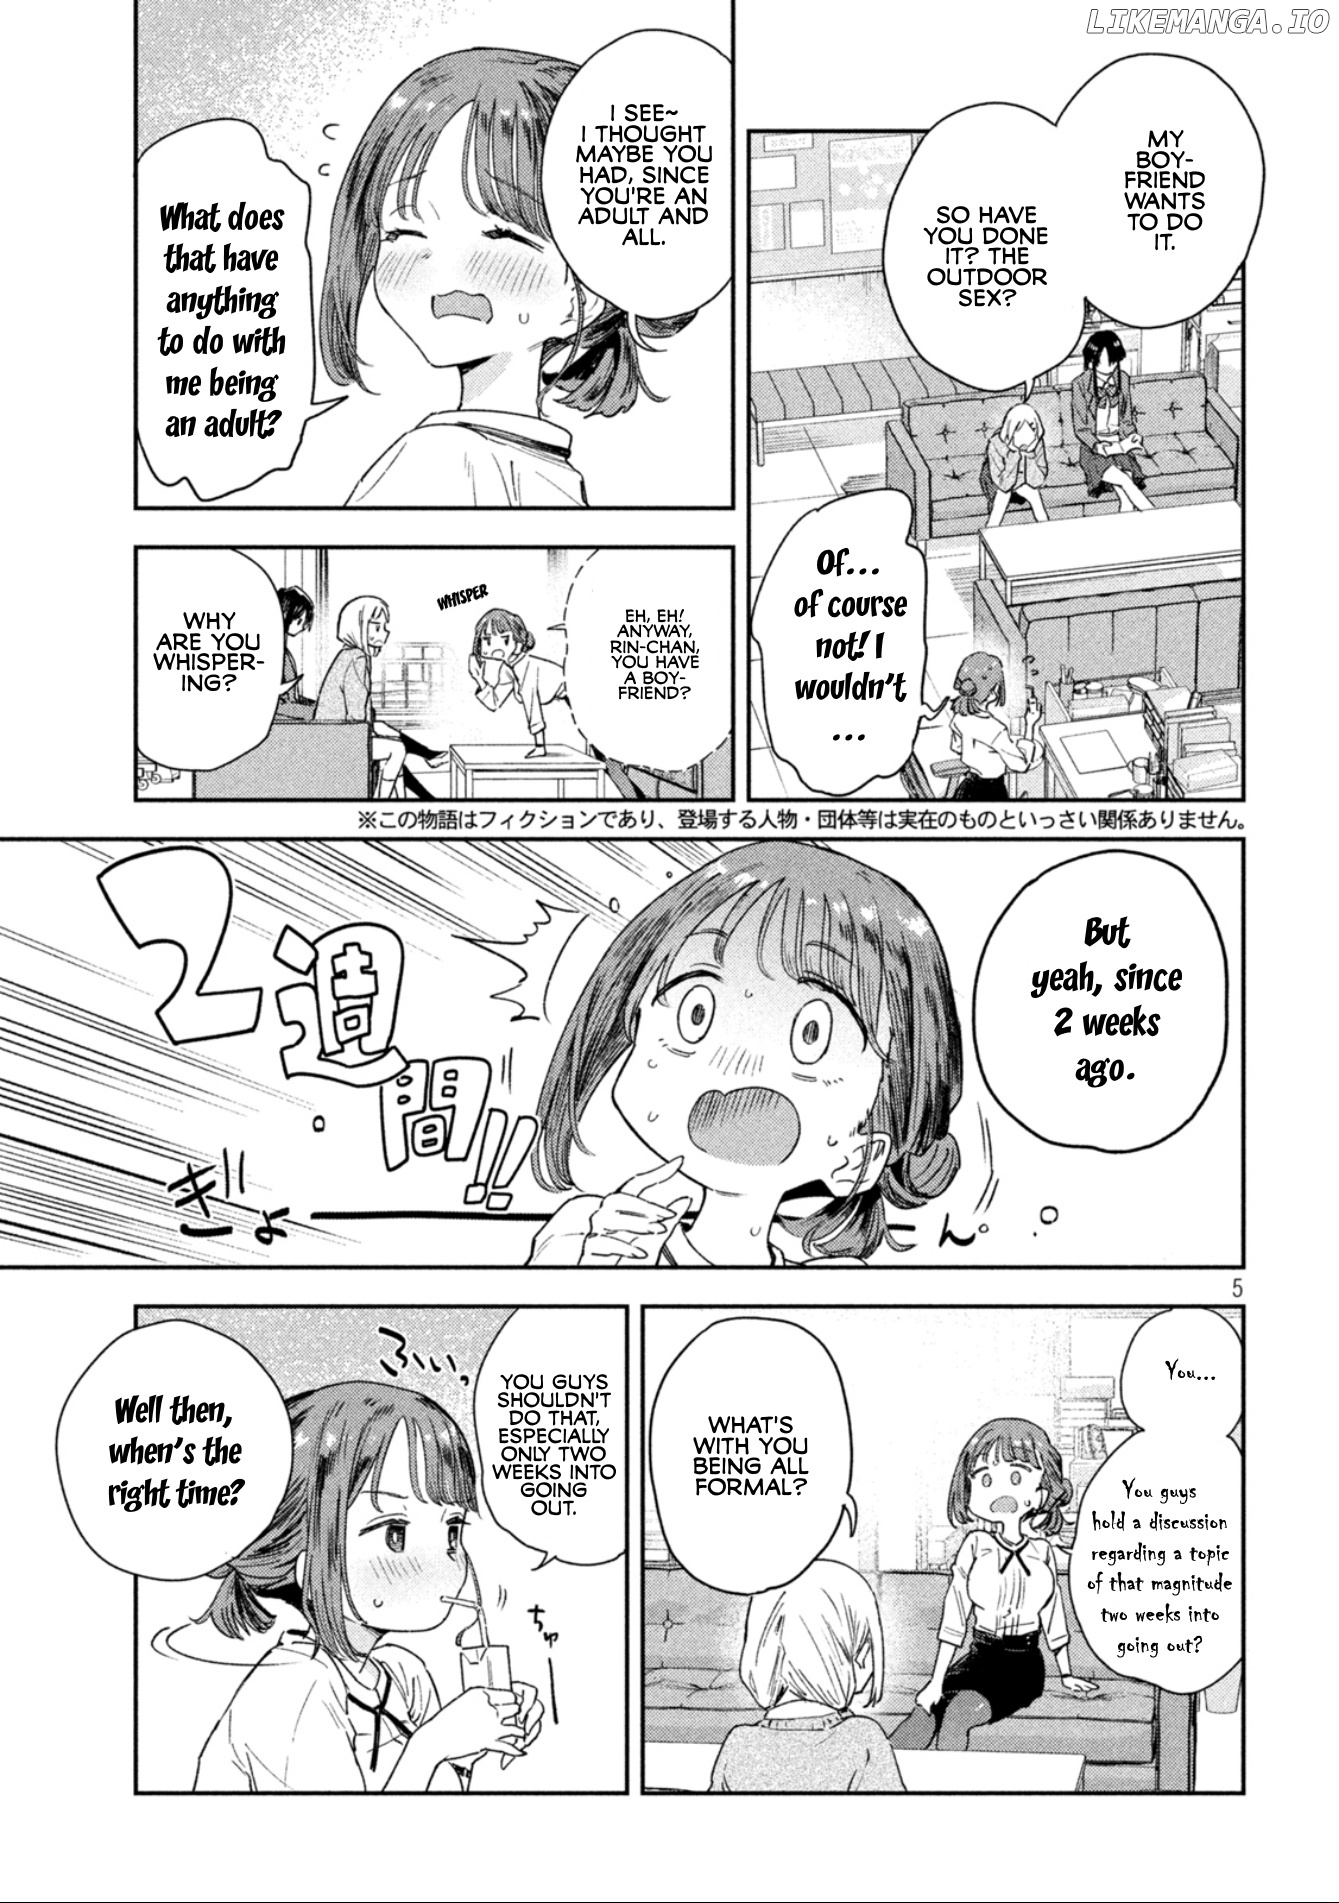 Miyo-Chan Sensei Said So chapter 1 - page 4